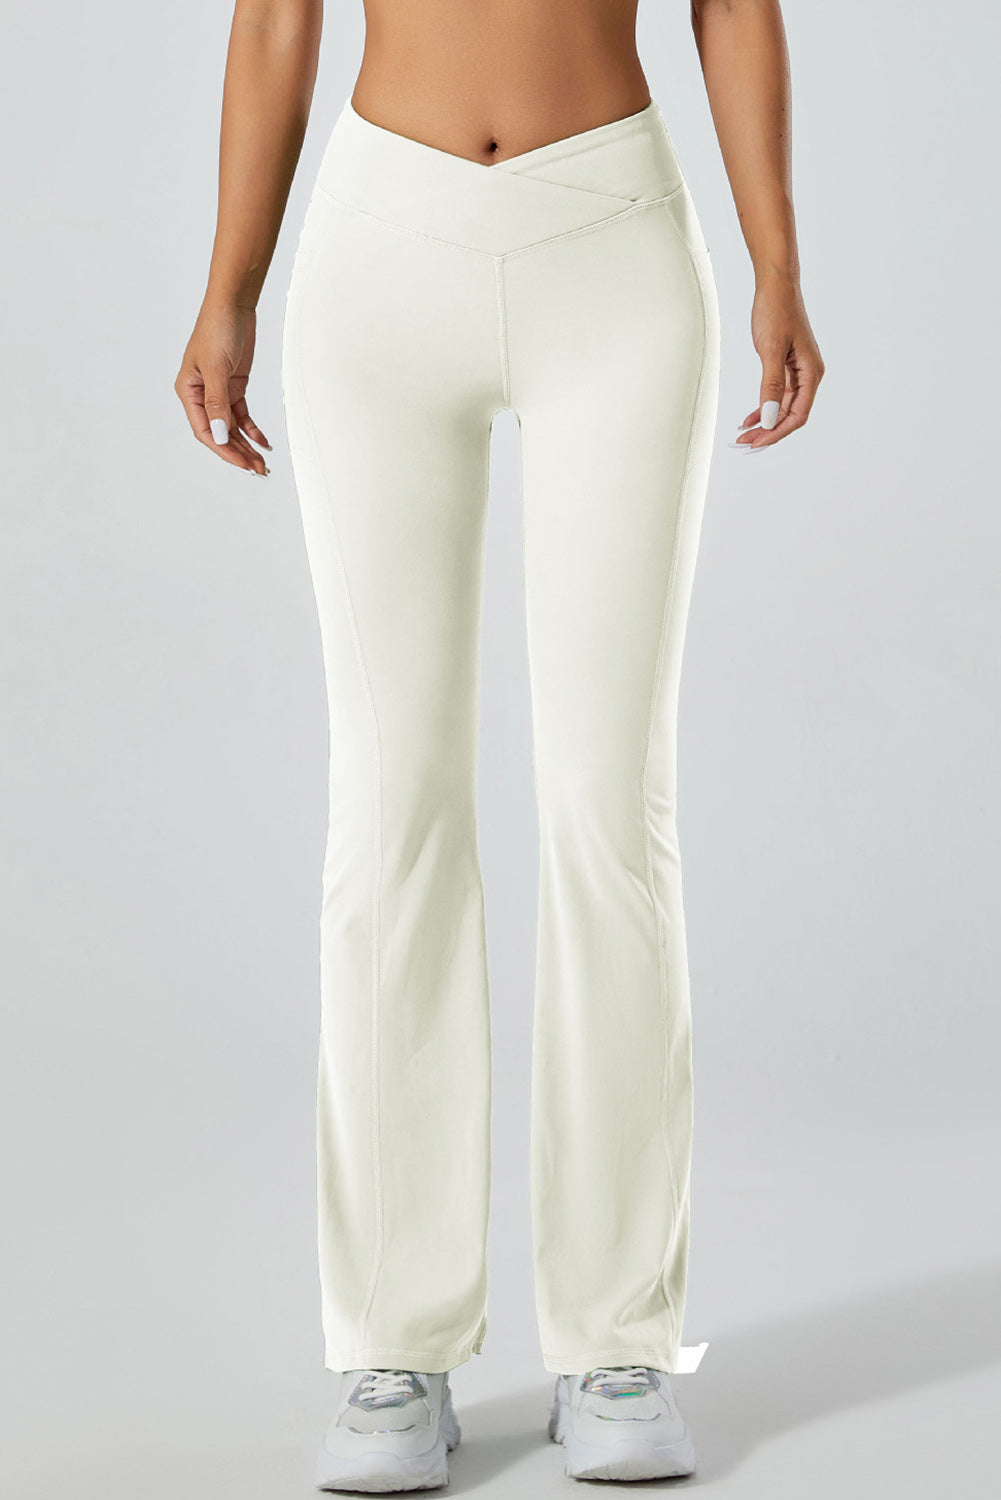  PACK265520-P1-1, White yoga pants